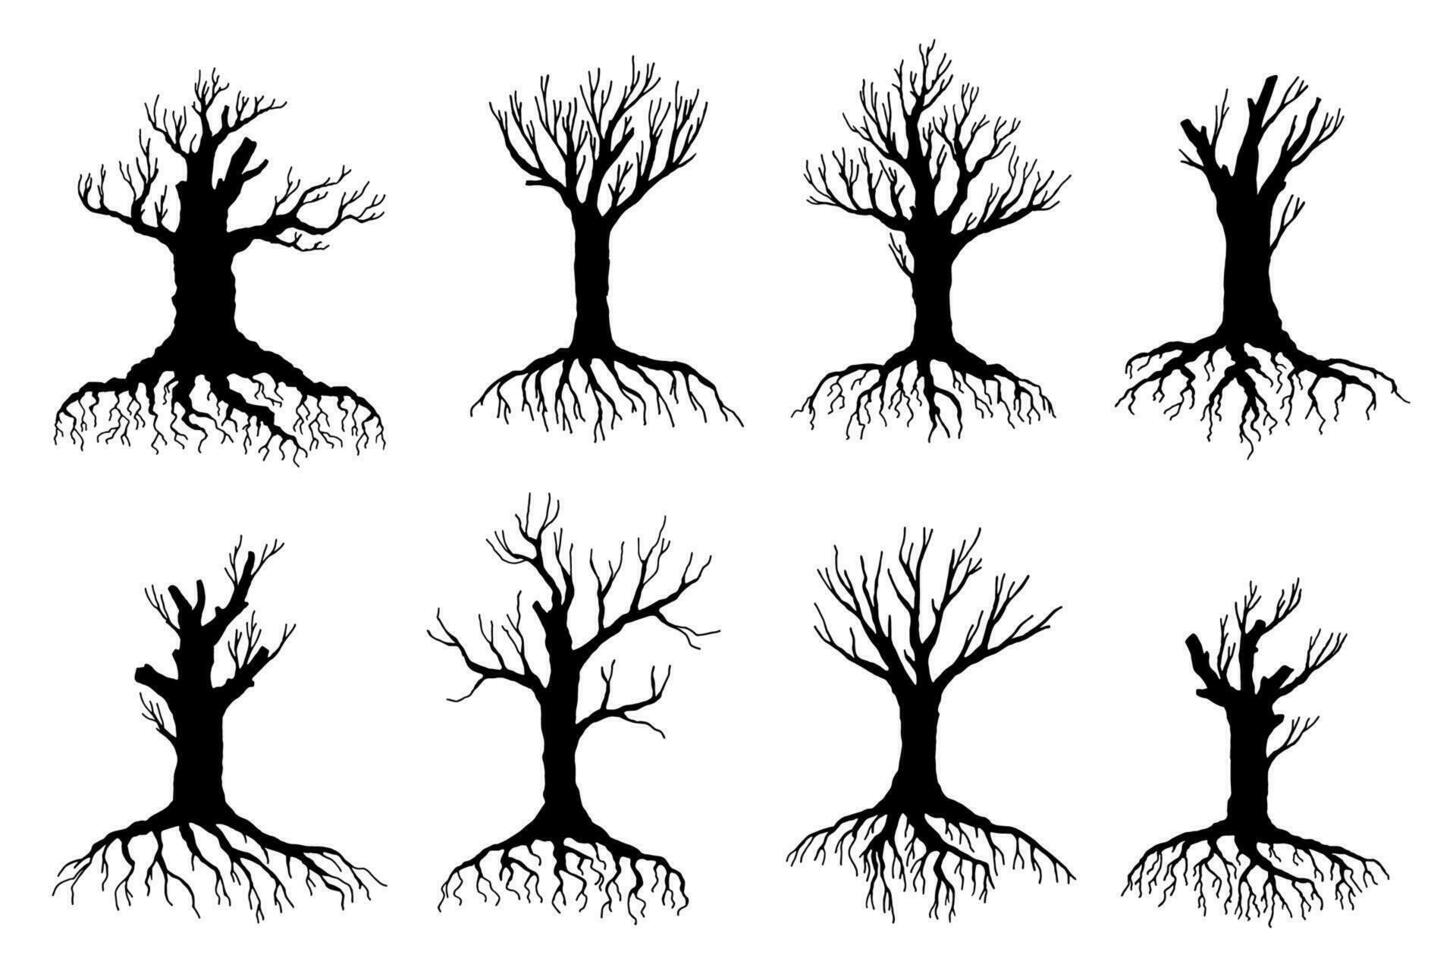 död- och vissnade träd silhuetter, miljö vektor